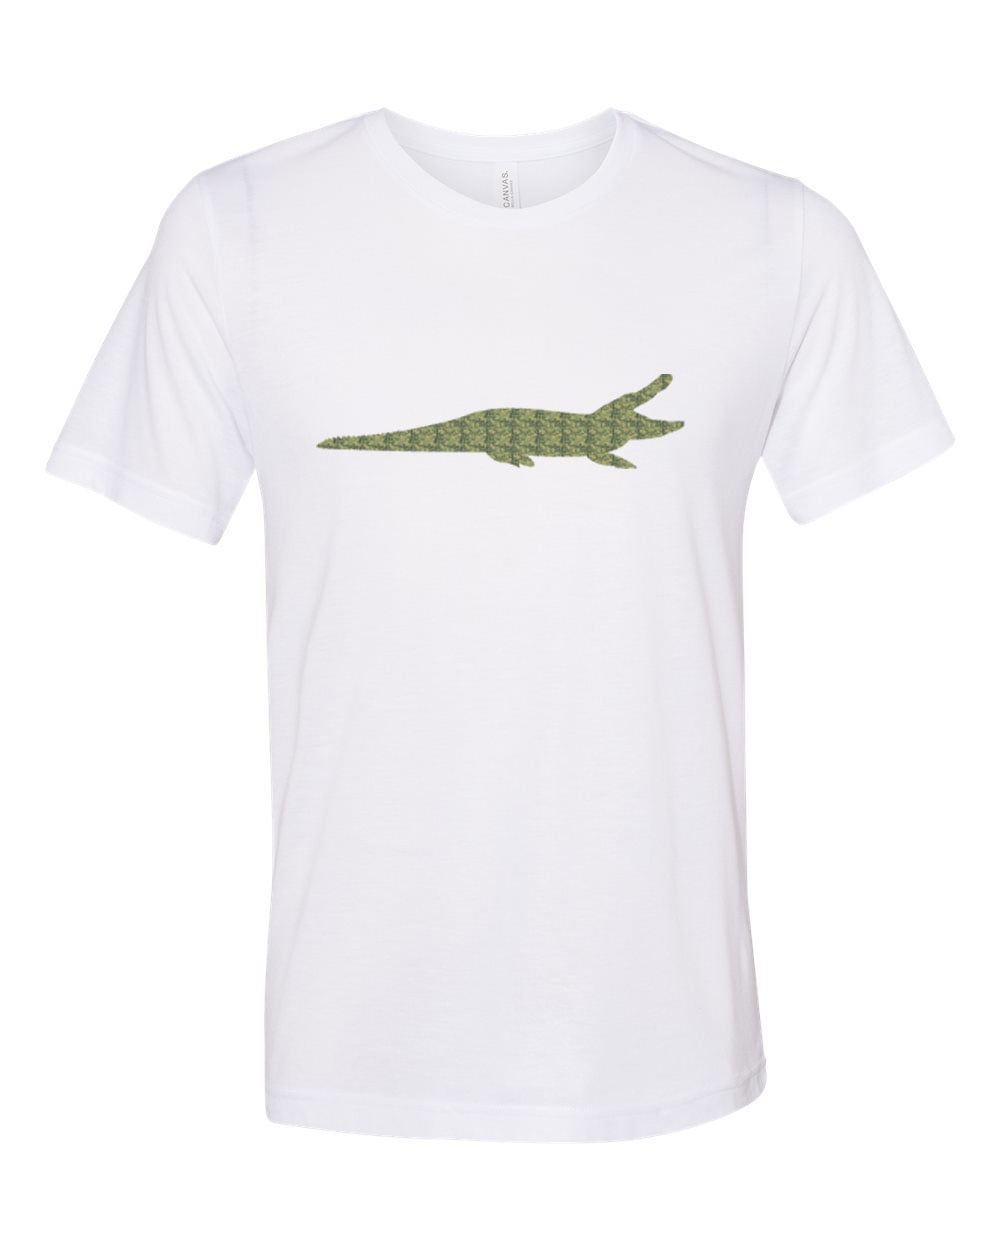 alligator shirt